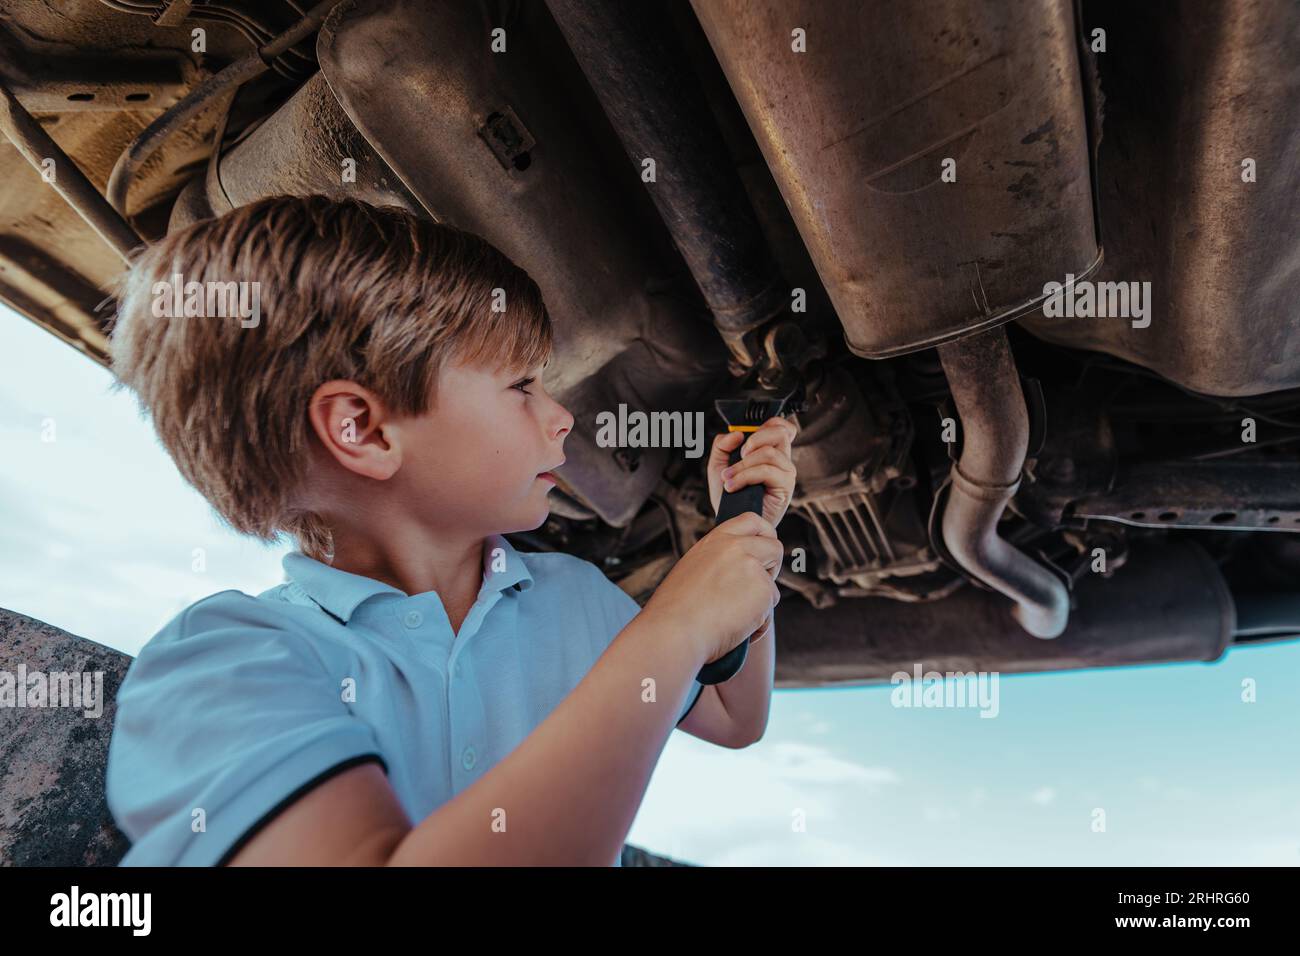 Junge Kfz-Mechaniker, der unter dem Boden des Fahrzeugs mit Schraubenschlüssel steht und das Fahrzeug repariert Stockfoto